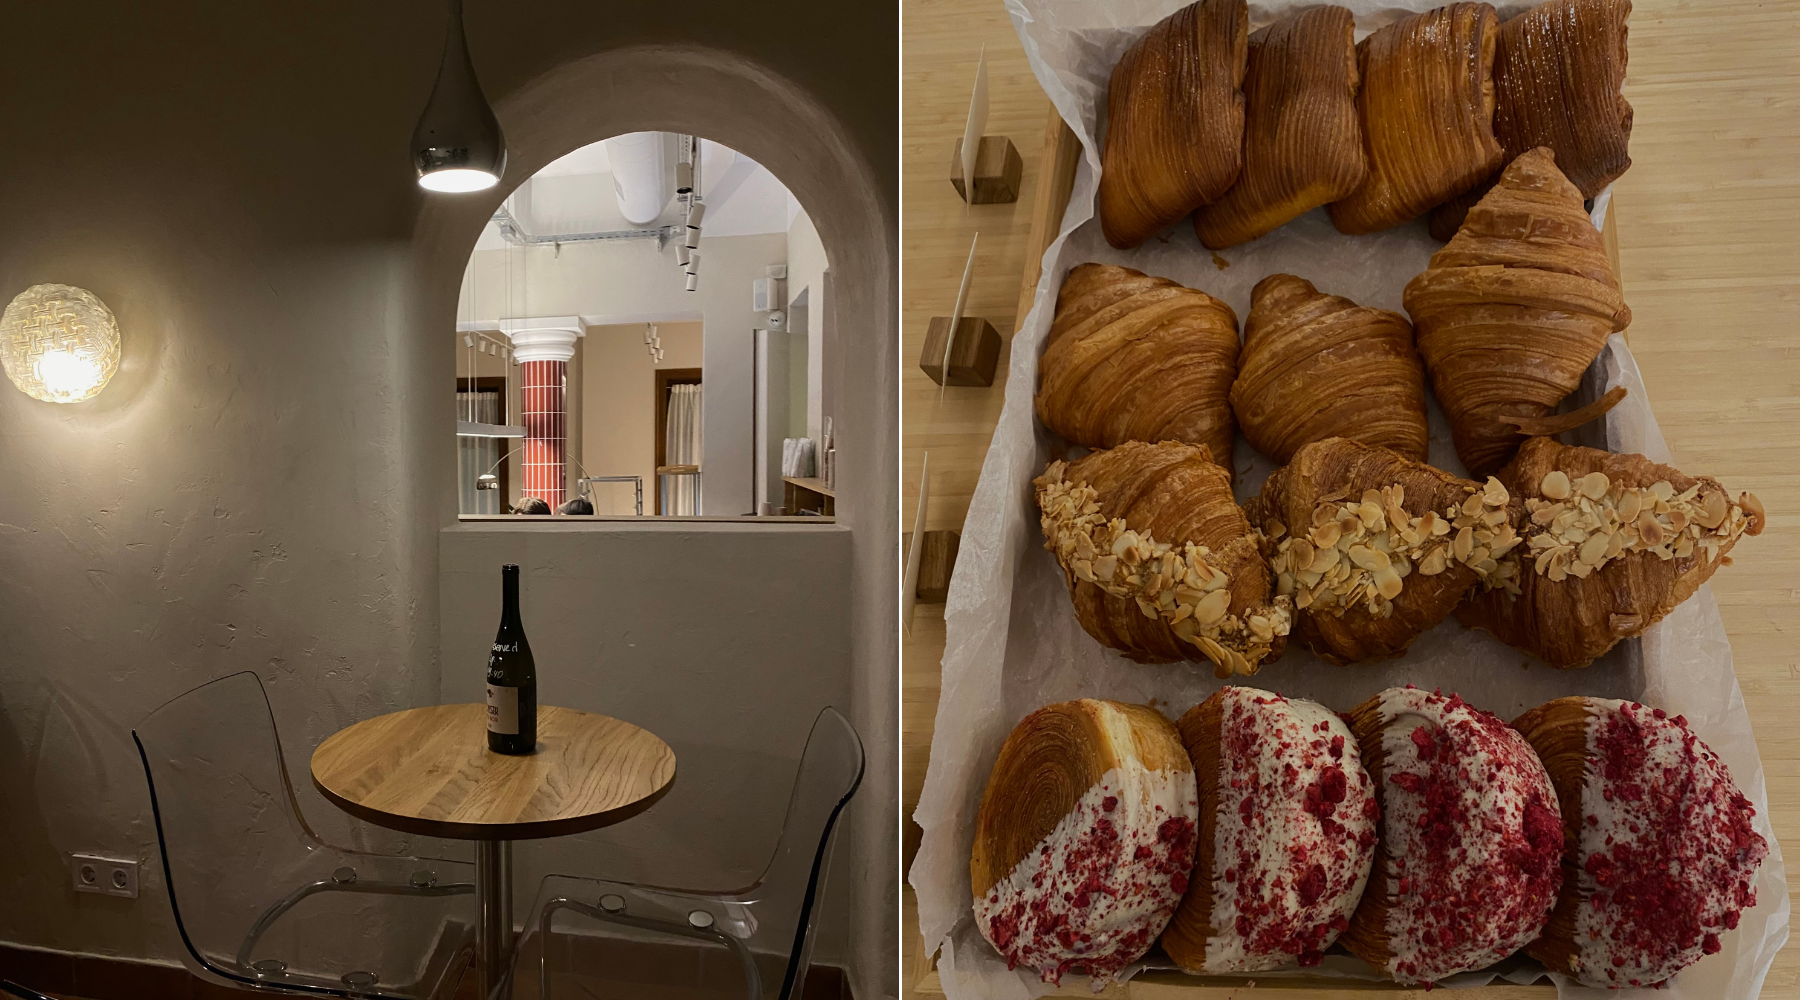 Posetili smo novo „it“ mesto u gradu: SLOJ – dorćolsku kolevku fantastičnih peciva i minimalizma